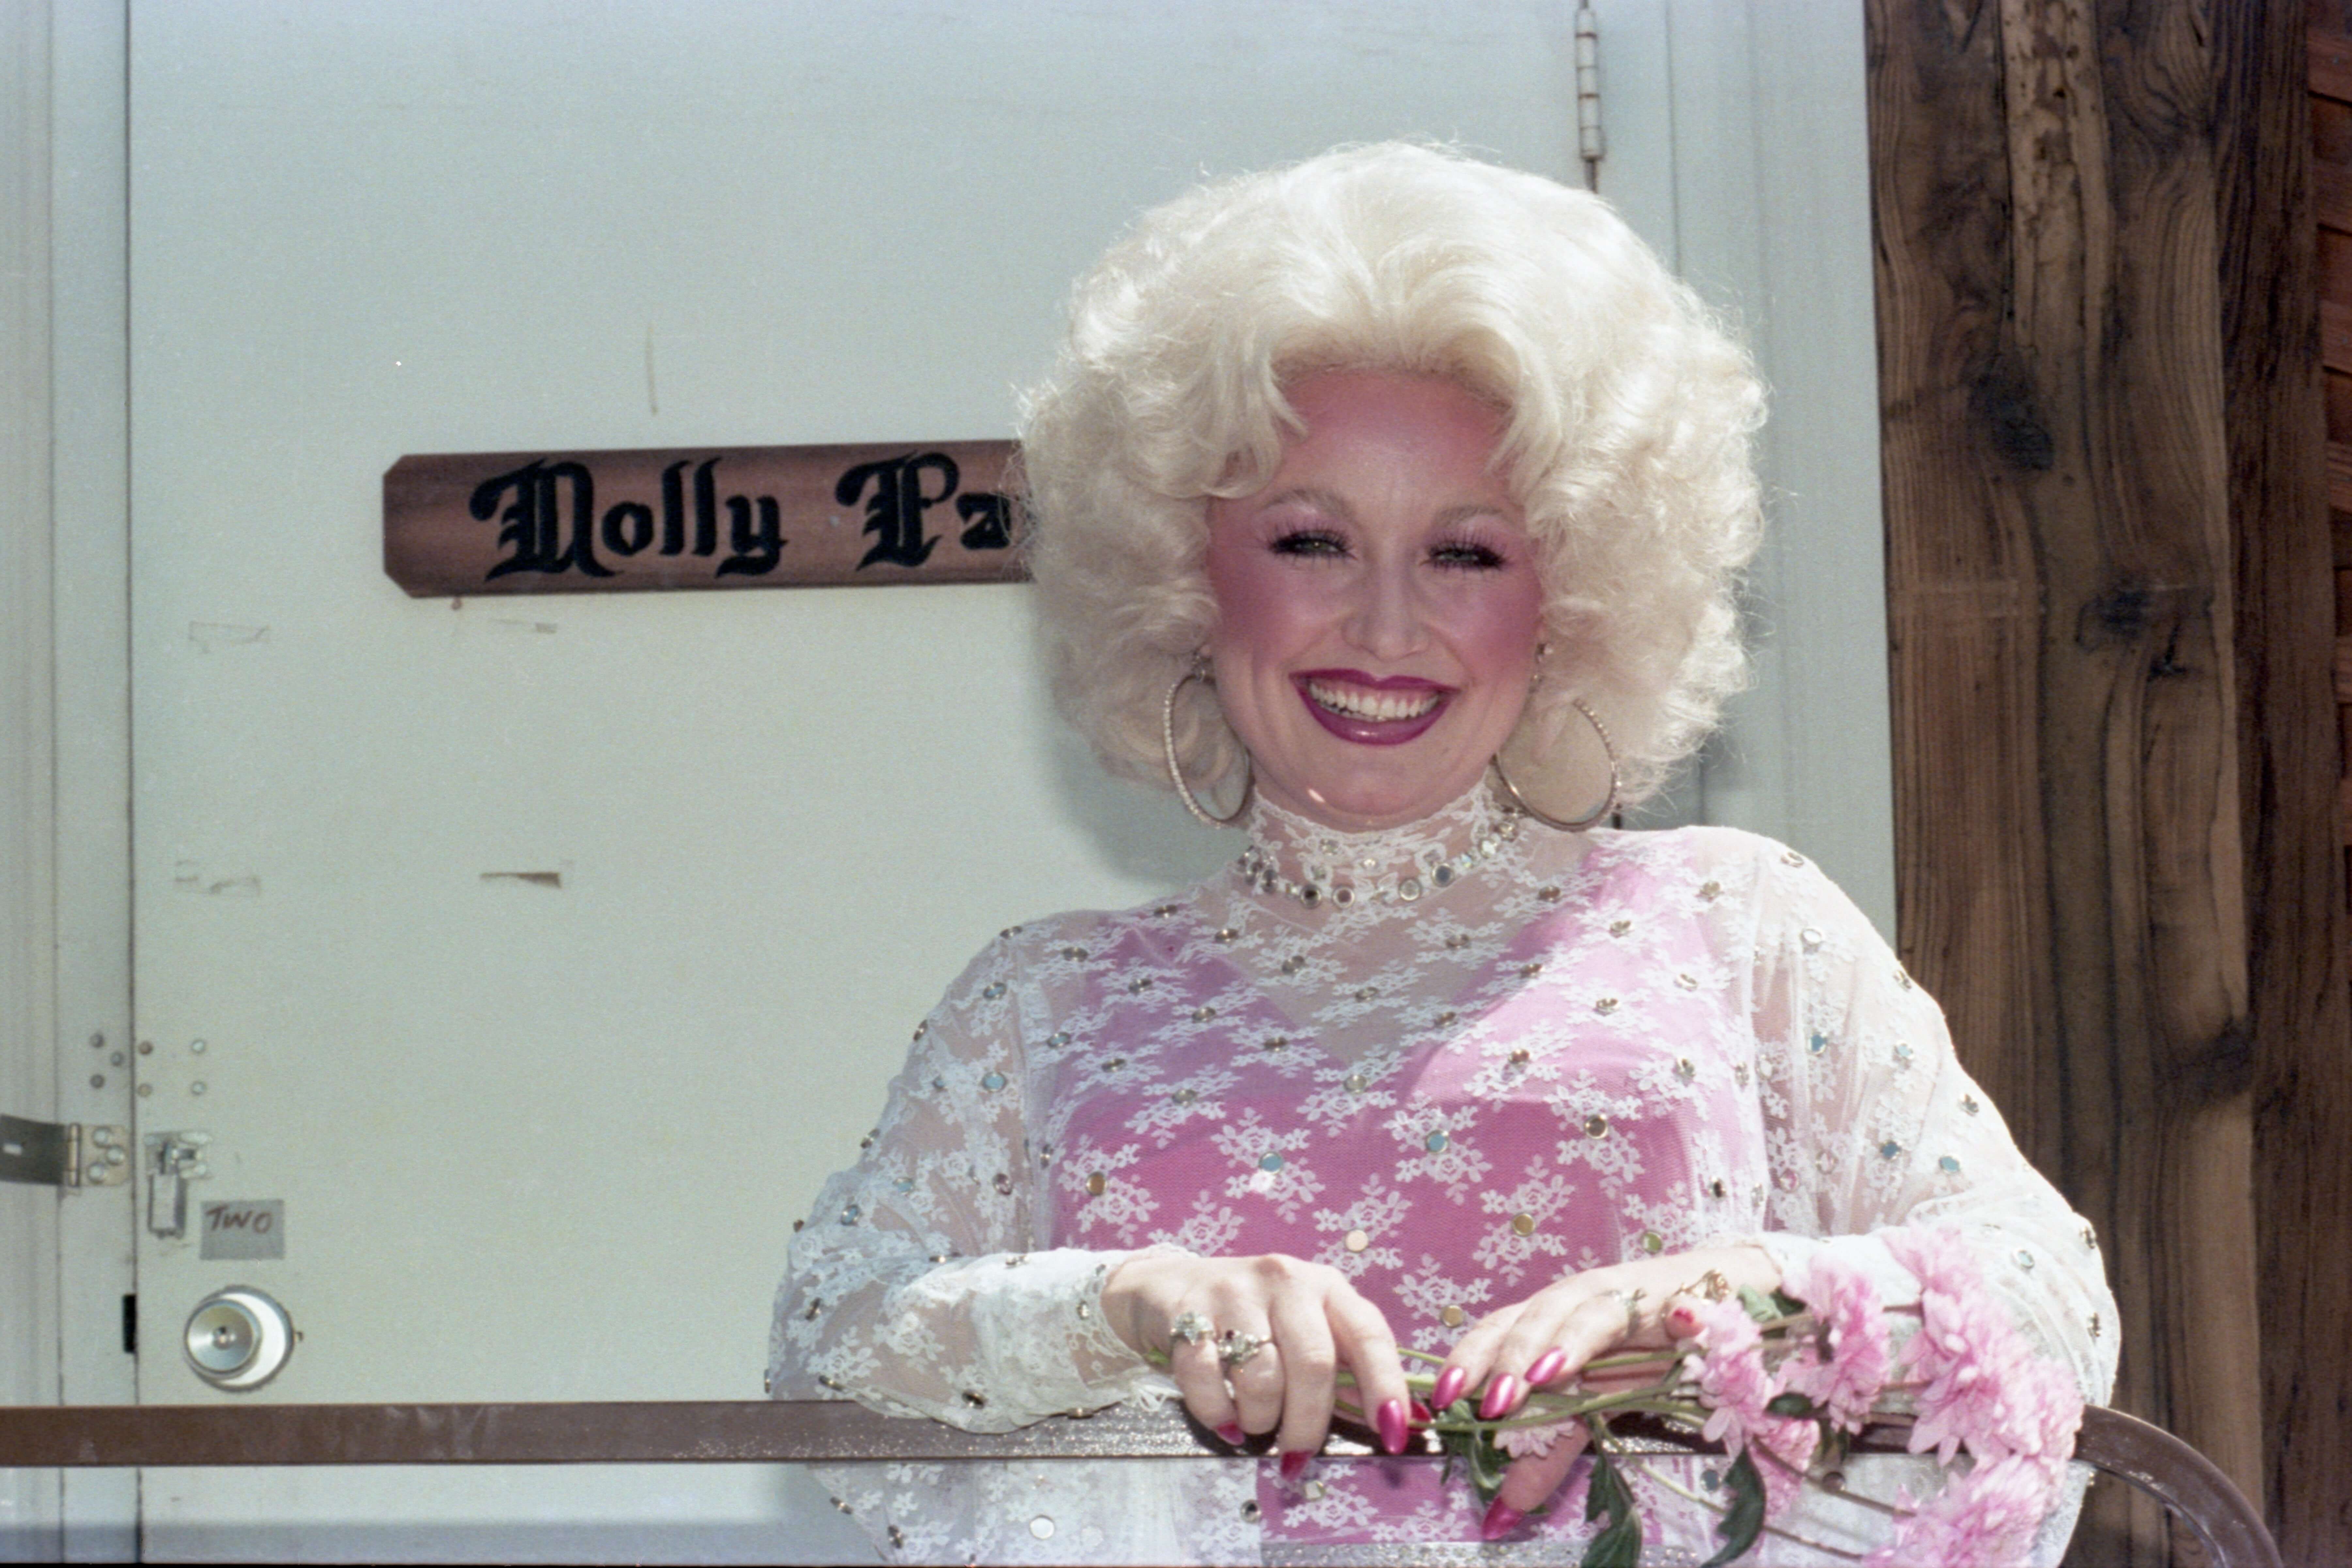 Dlaczego Dolly Parton była tak zainteresowana dorastaniem w makijażu, mimo że było to zabronione